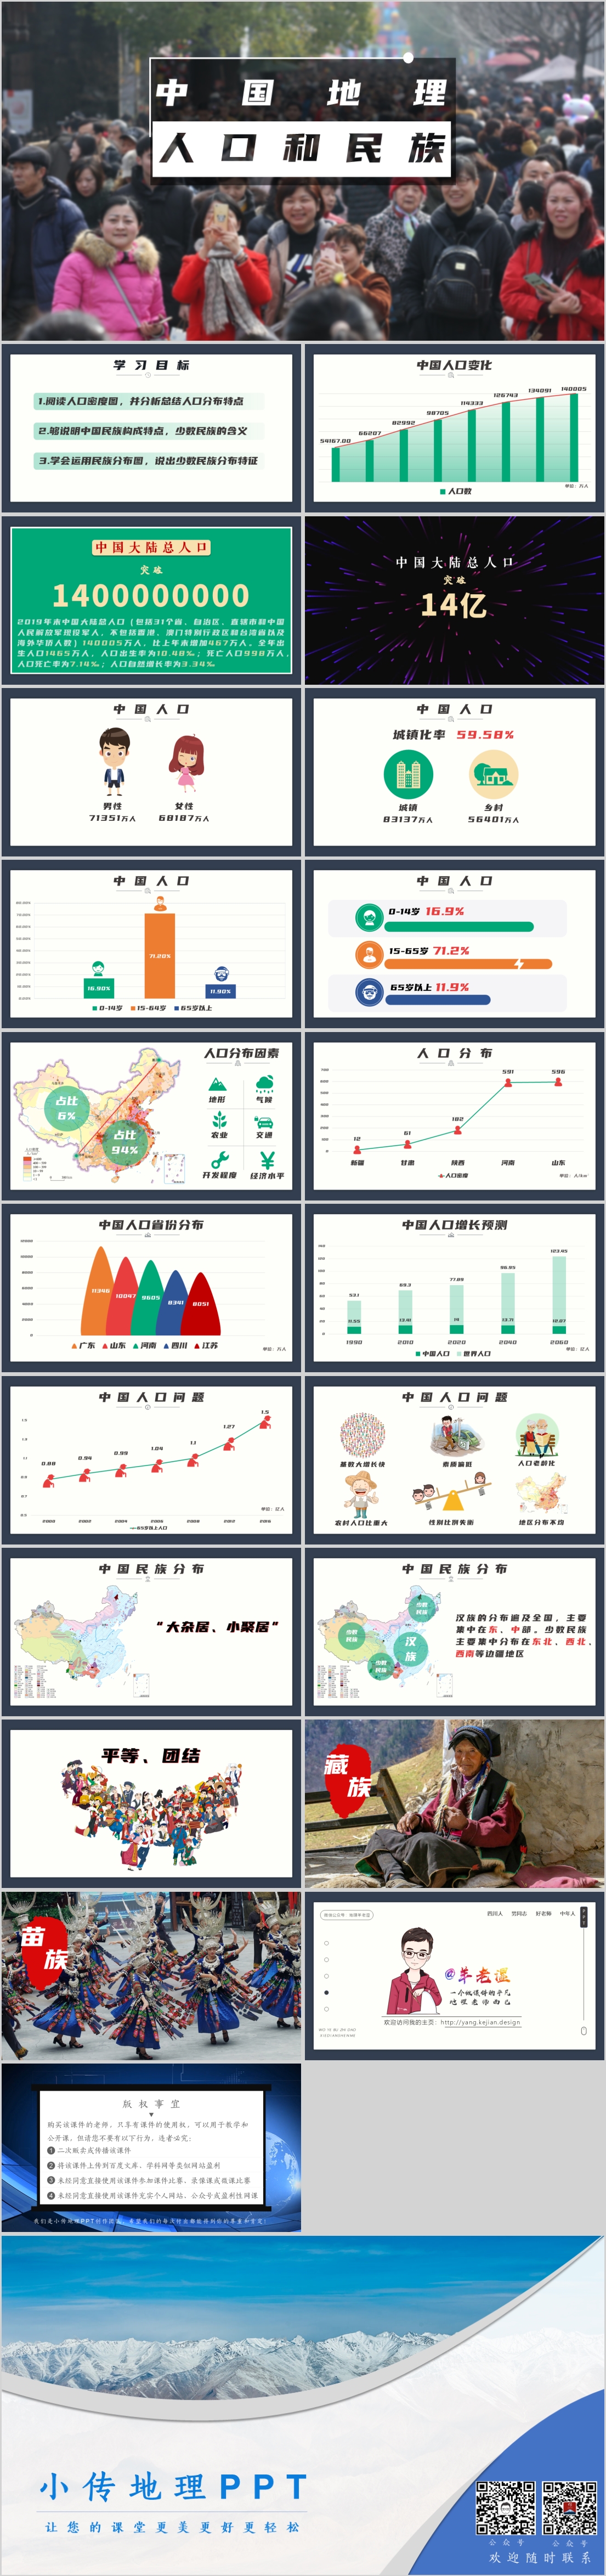 中国的人口和民族.jpg